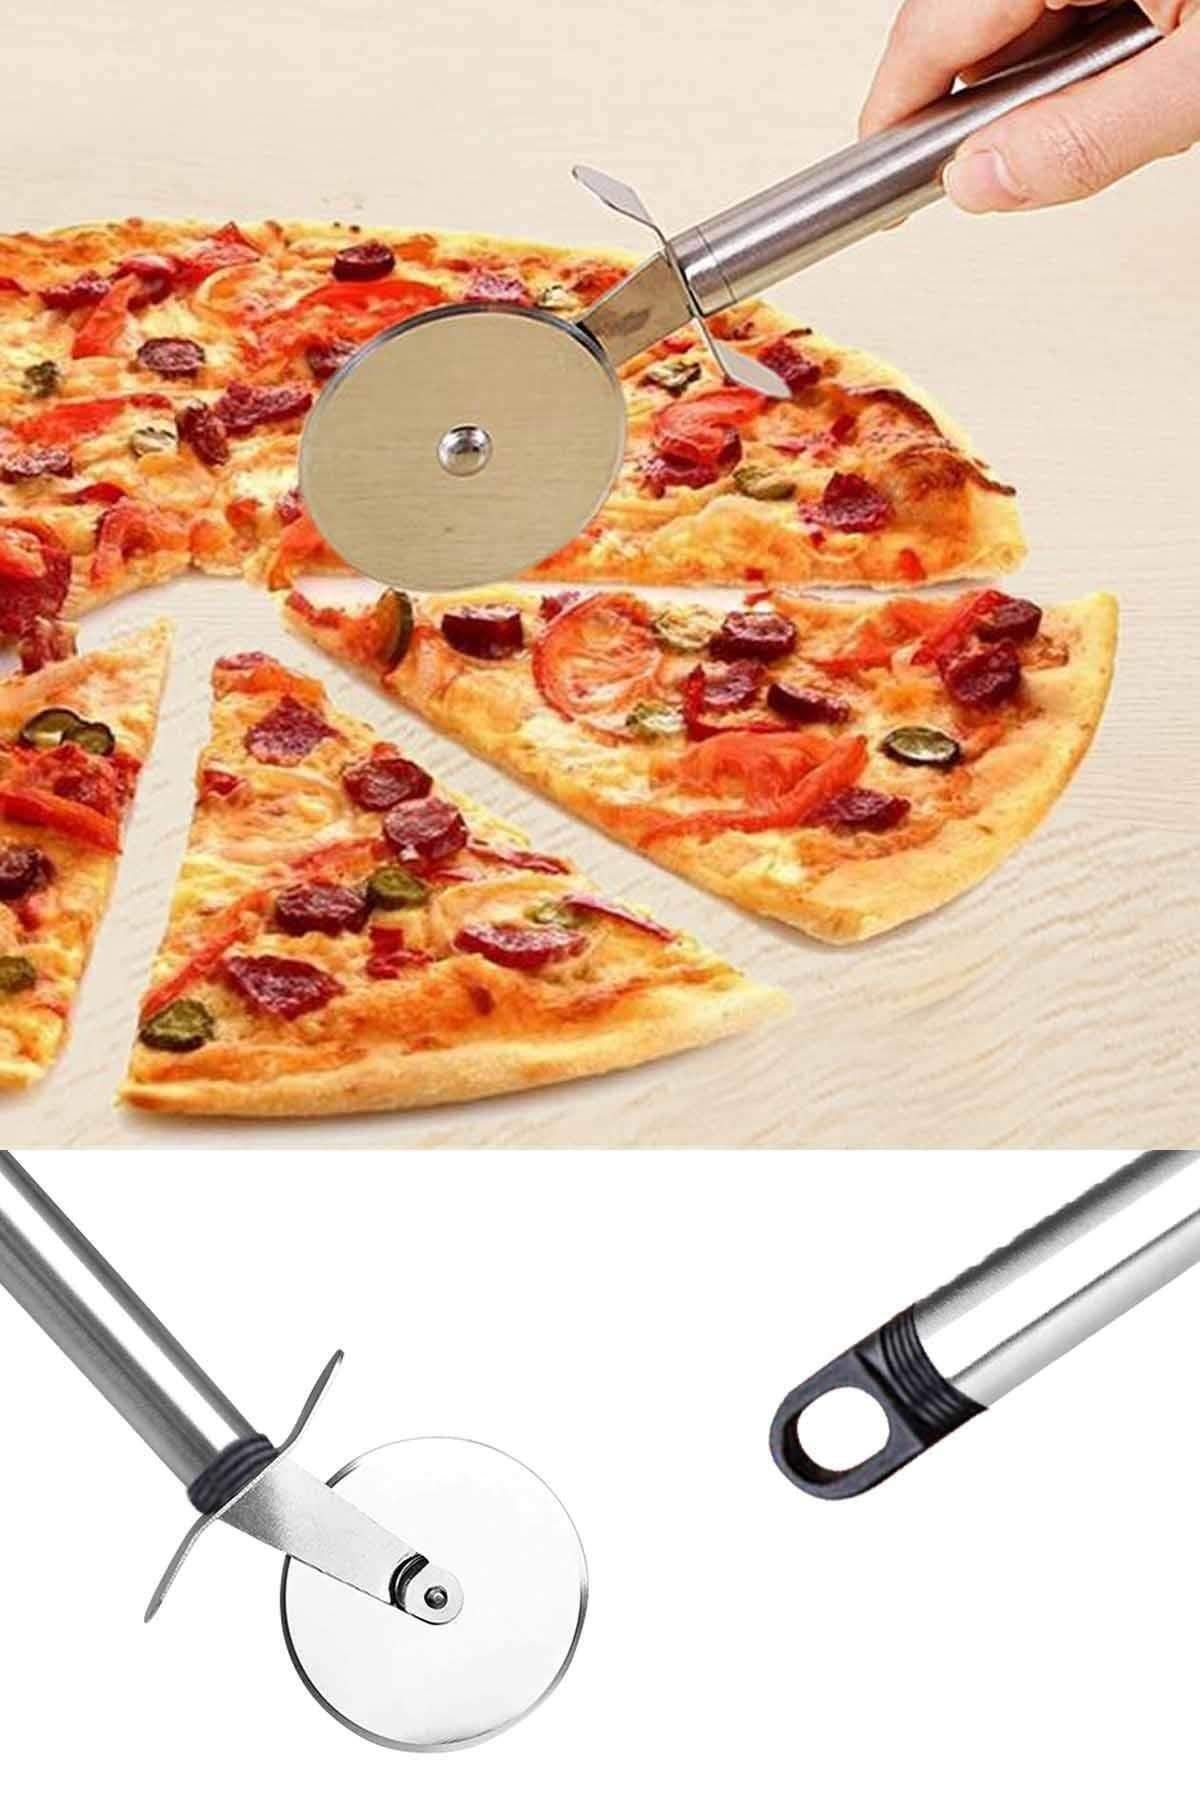 Arsimo Paslanmaz Çelik Pizza Hamur Mantı Börek Kesme Ruleti | Pratik Pizza Kesici Dilimleyici Rulet